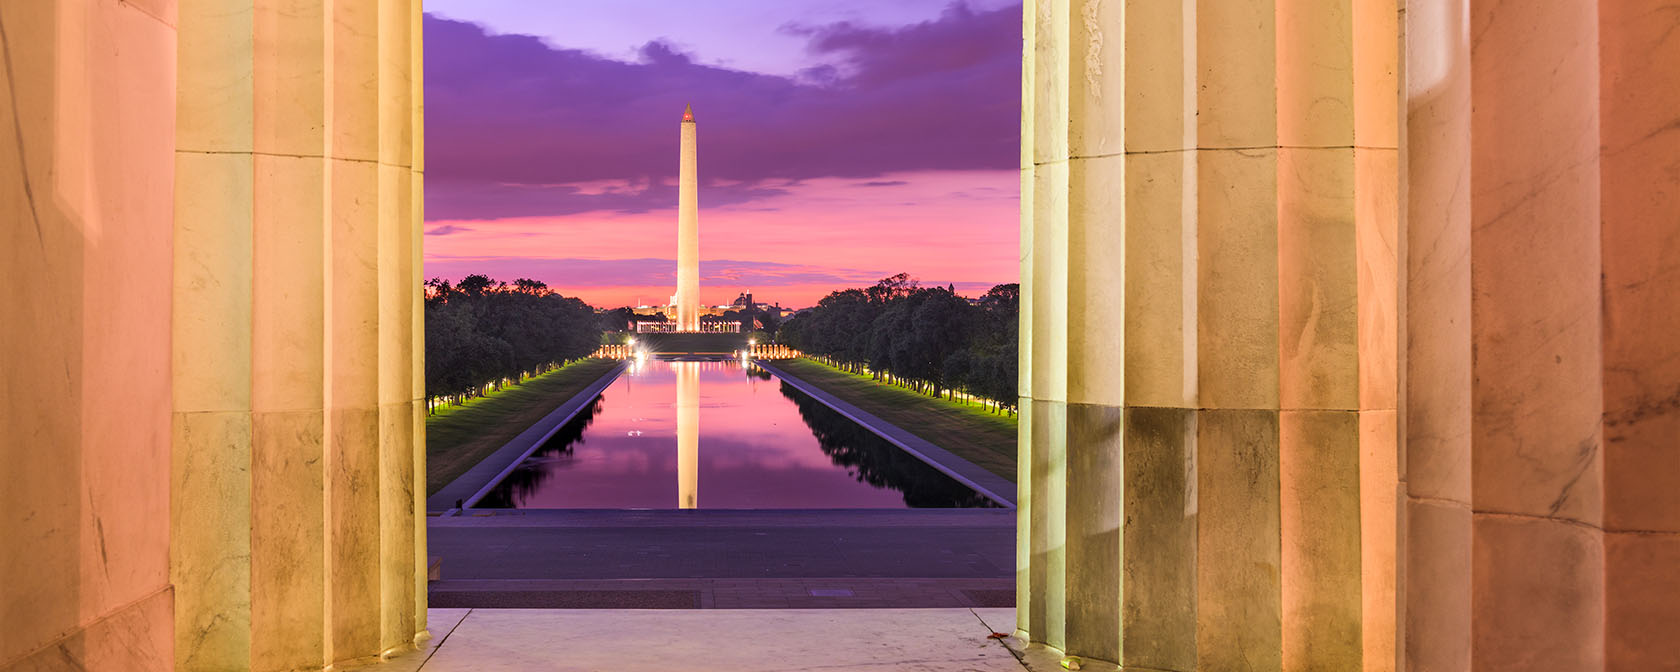 Blick auf das Washington Monument und den Reflecting Pool vom Lincoln Memorial mit hübschen Sonnenuntergangsfarben